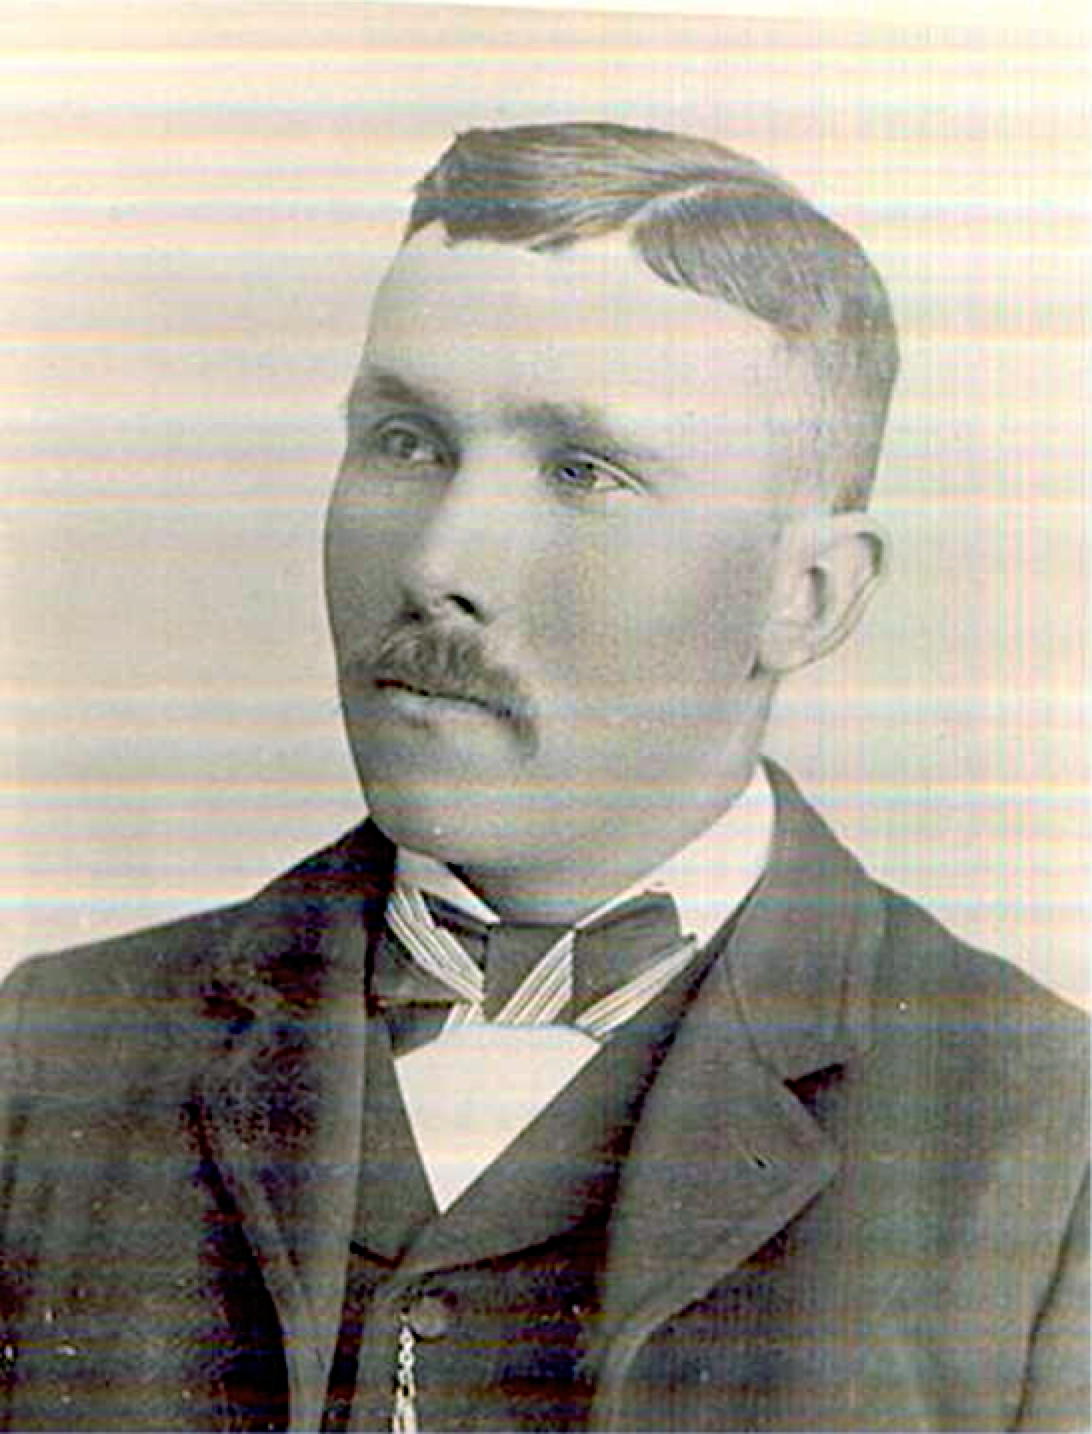 Edward Umlor (1866-1941)